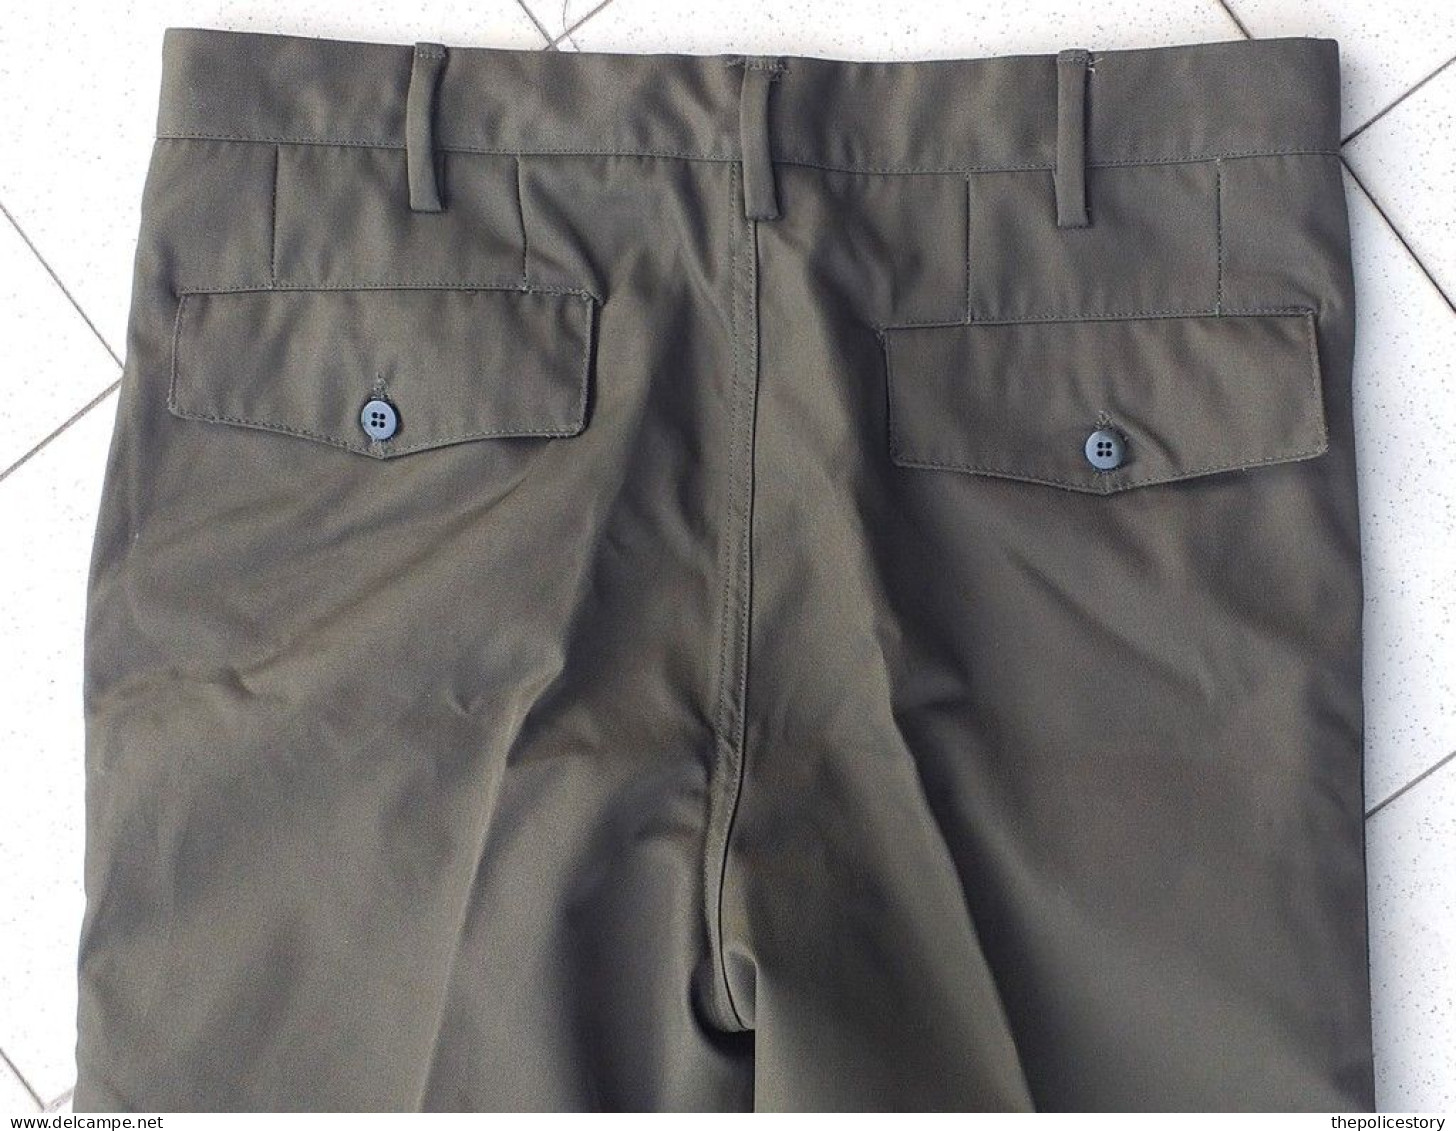 Giacca pantaloni mimetica verde E.I. tg. 46 del 1986 originale marcata mai usata